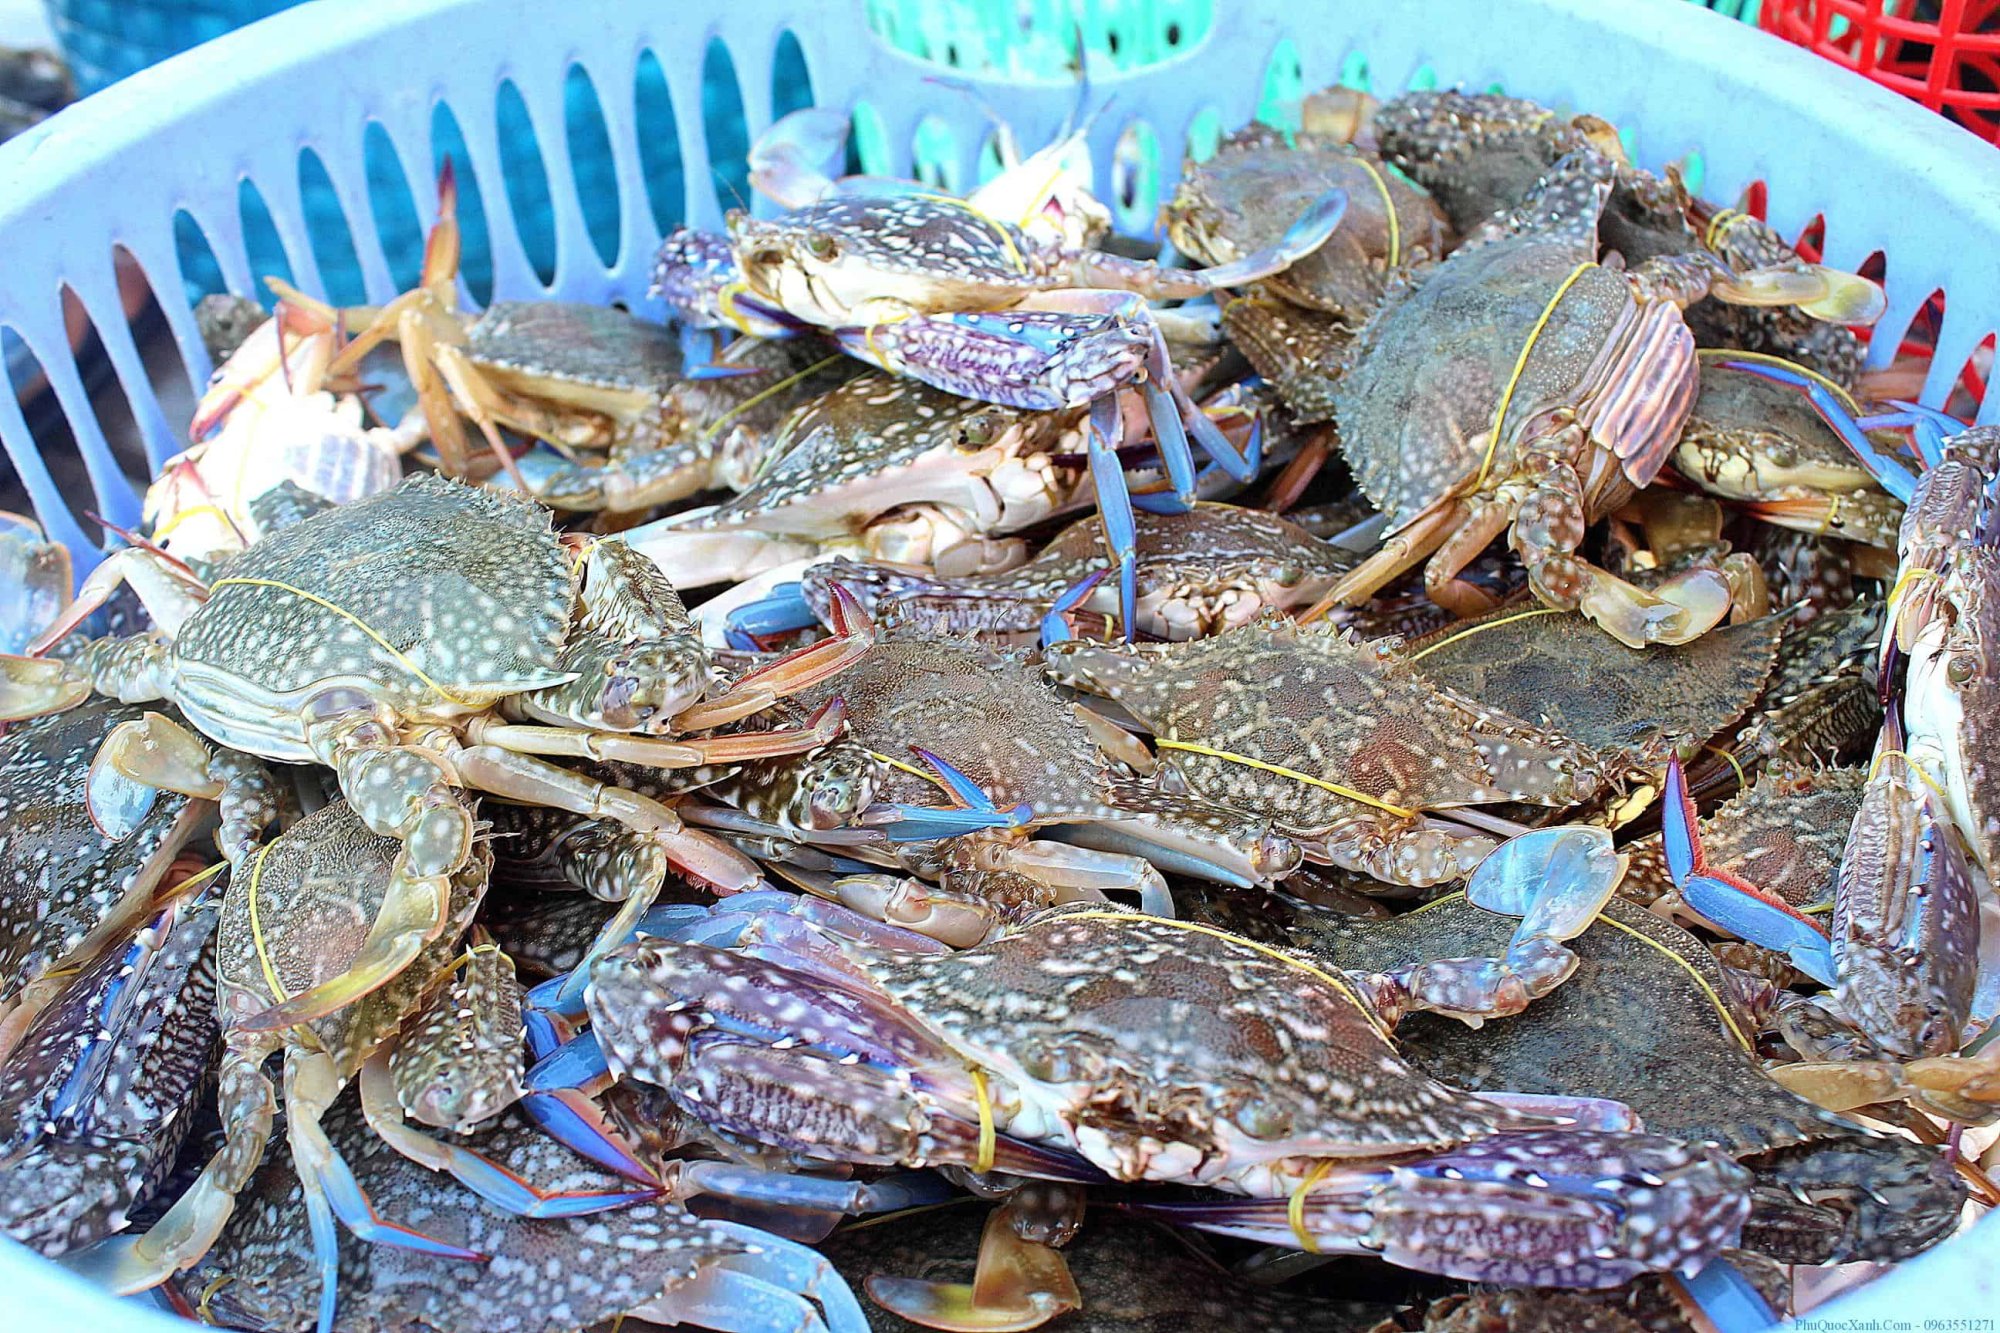 Các khu chợ hải sản ở Phú Quốc - chợ hải sản An Thới